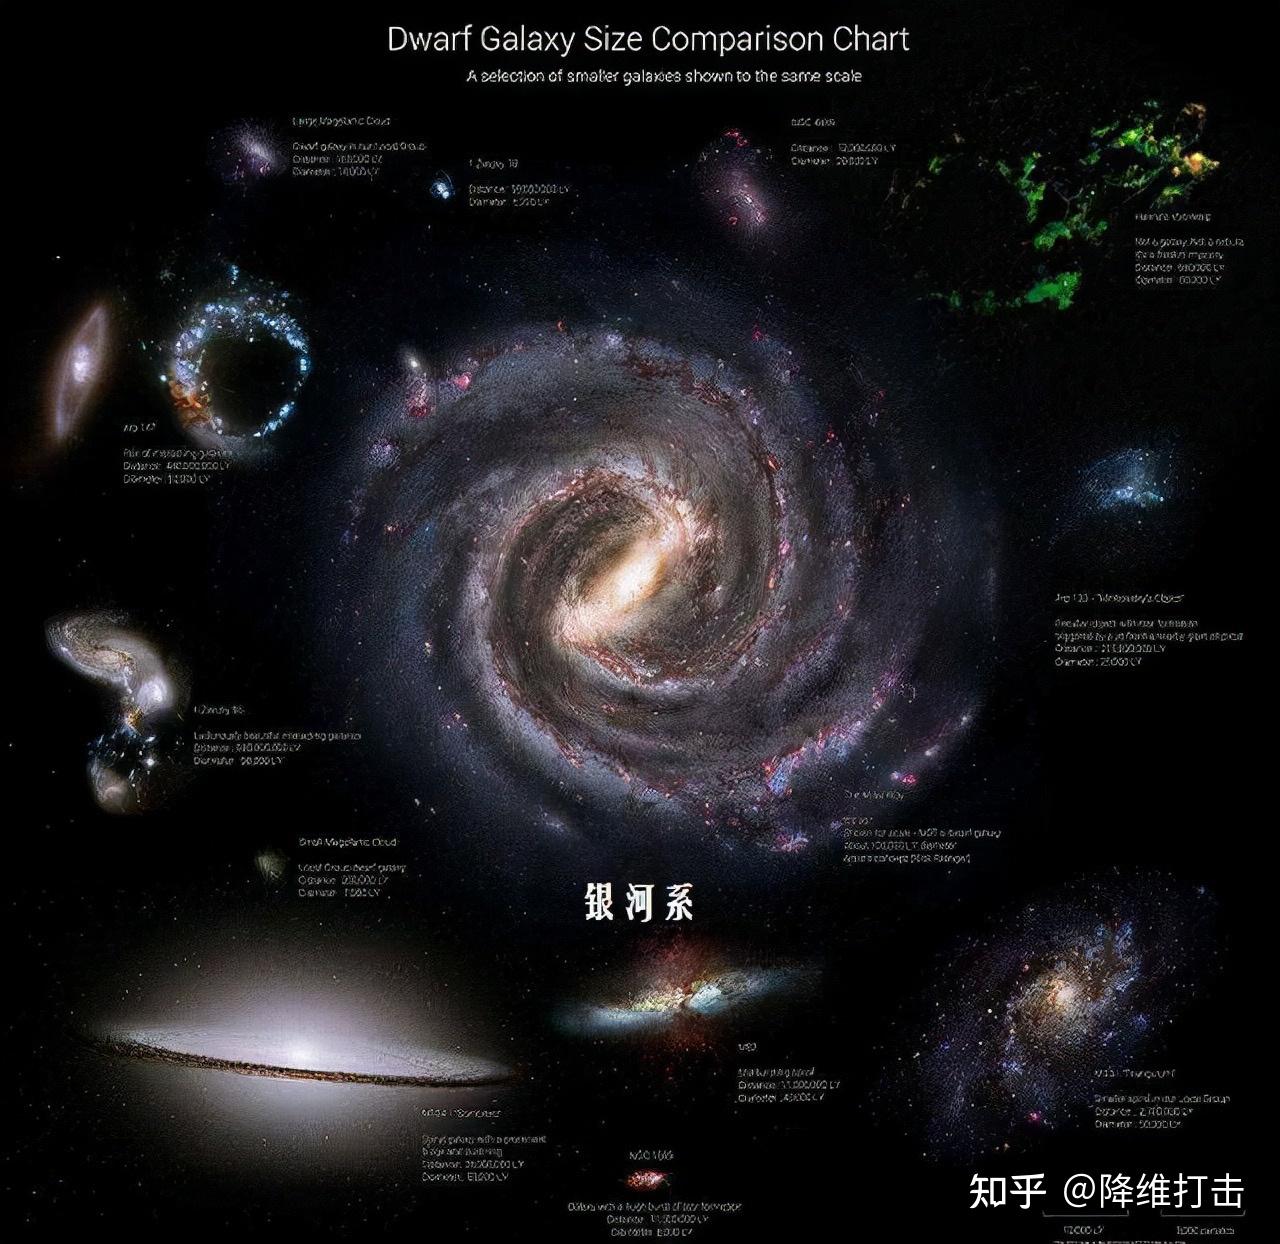 地球在室女座超星系团图片